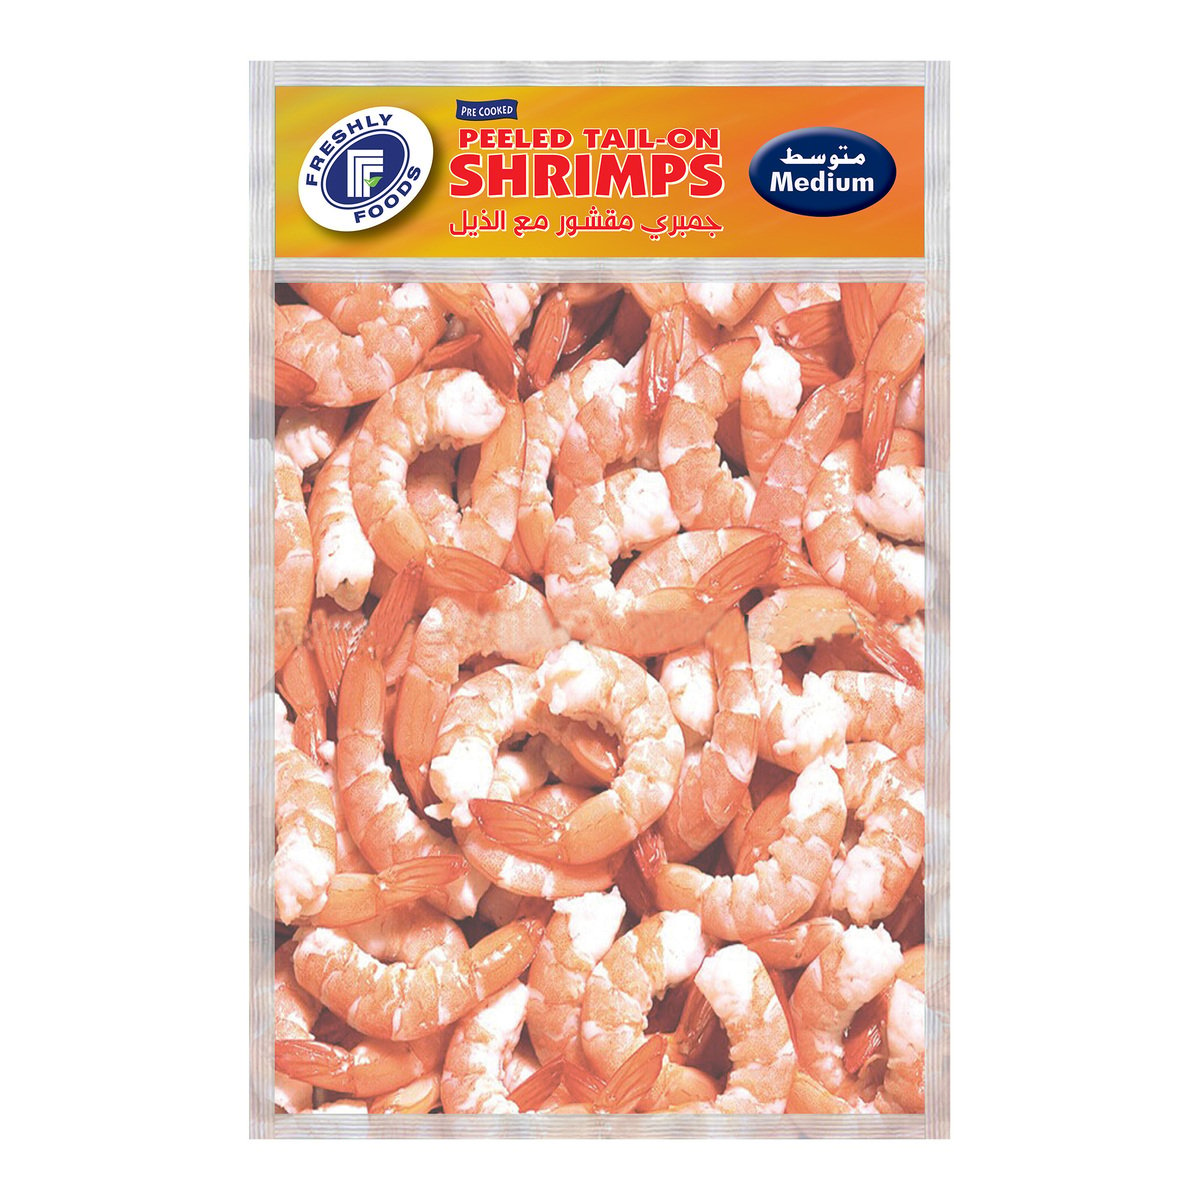 Freshly Foods Frozen Peeled Tail-On Shrimps Medium 2 x 400 g